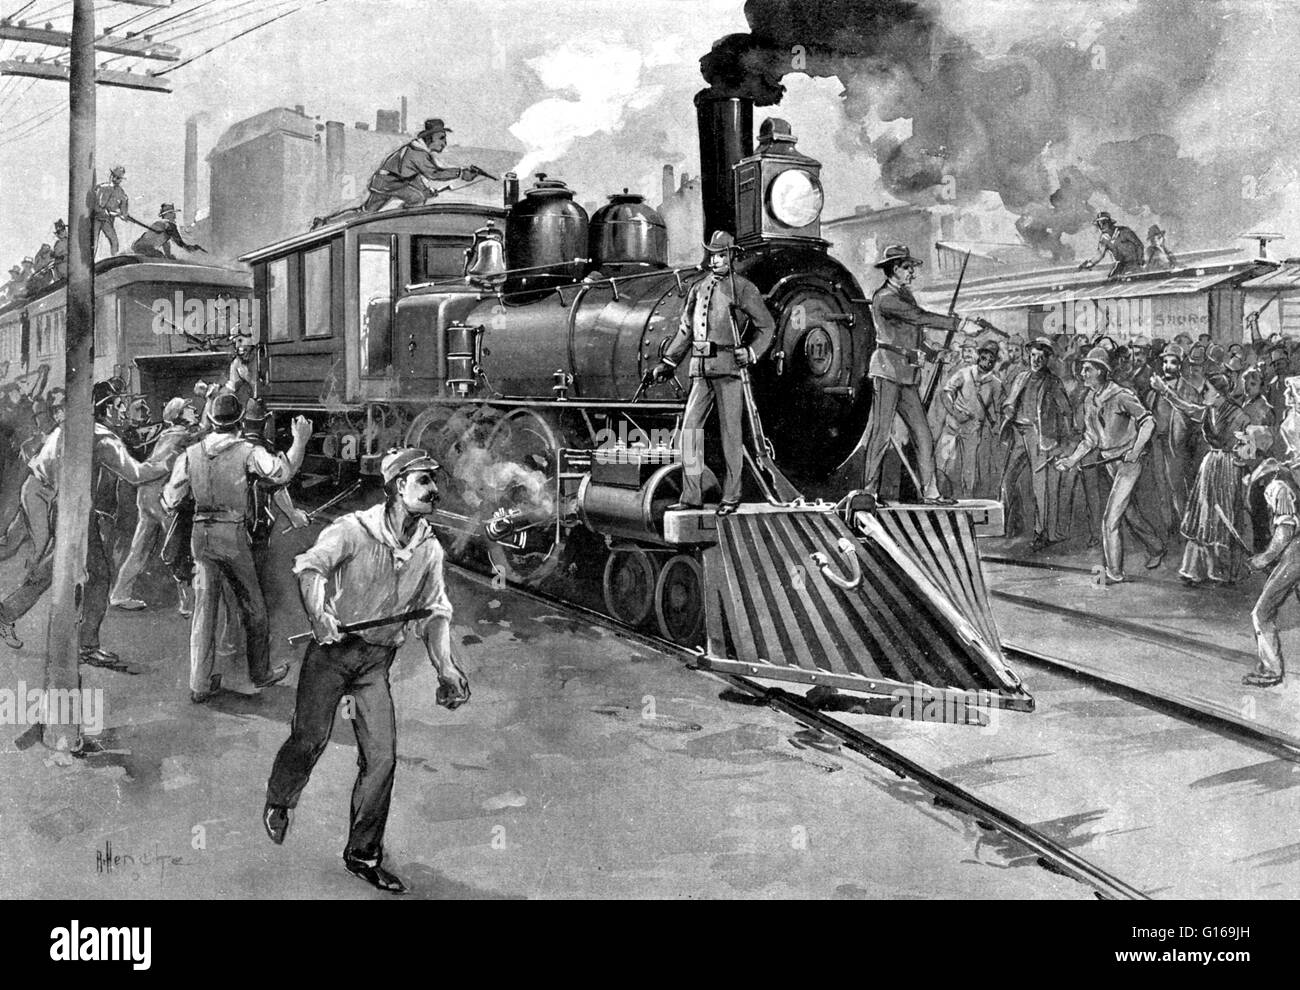 Die Pullman-Streik war ein bundesweit Konflikt im Sommer 1894 zwischen dem neuen American Railway Union (ARU) und Eisenbahnen, die in den Vereinigten Staaten aufgetreten sind. Es Herunterfahren ein Großteil des Landes Güter- und Personenverkehr westlich von Detroit, Michigan. Th Stockfoto